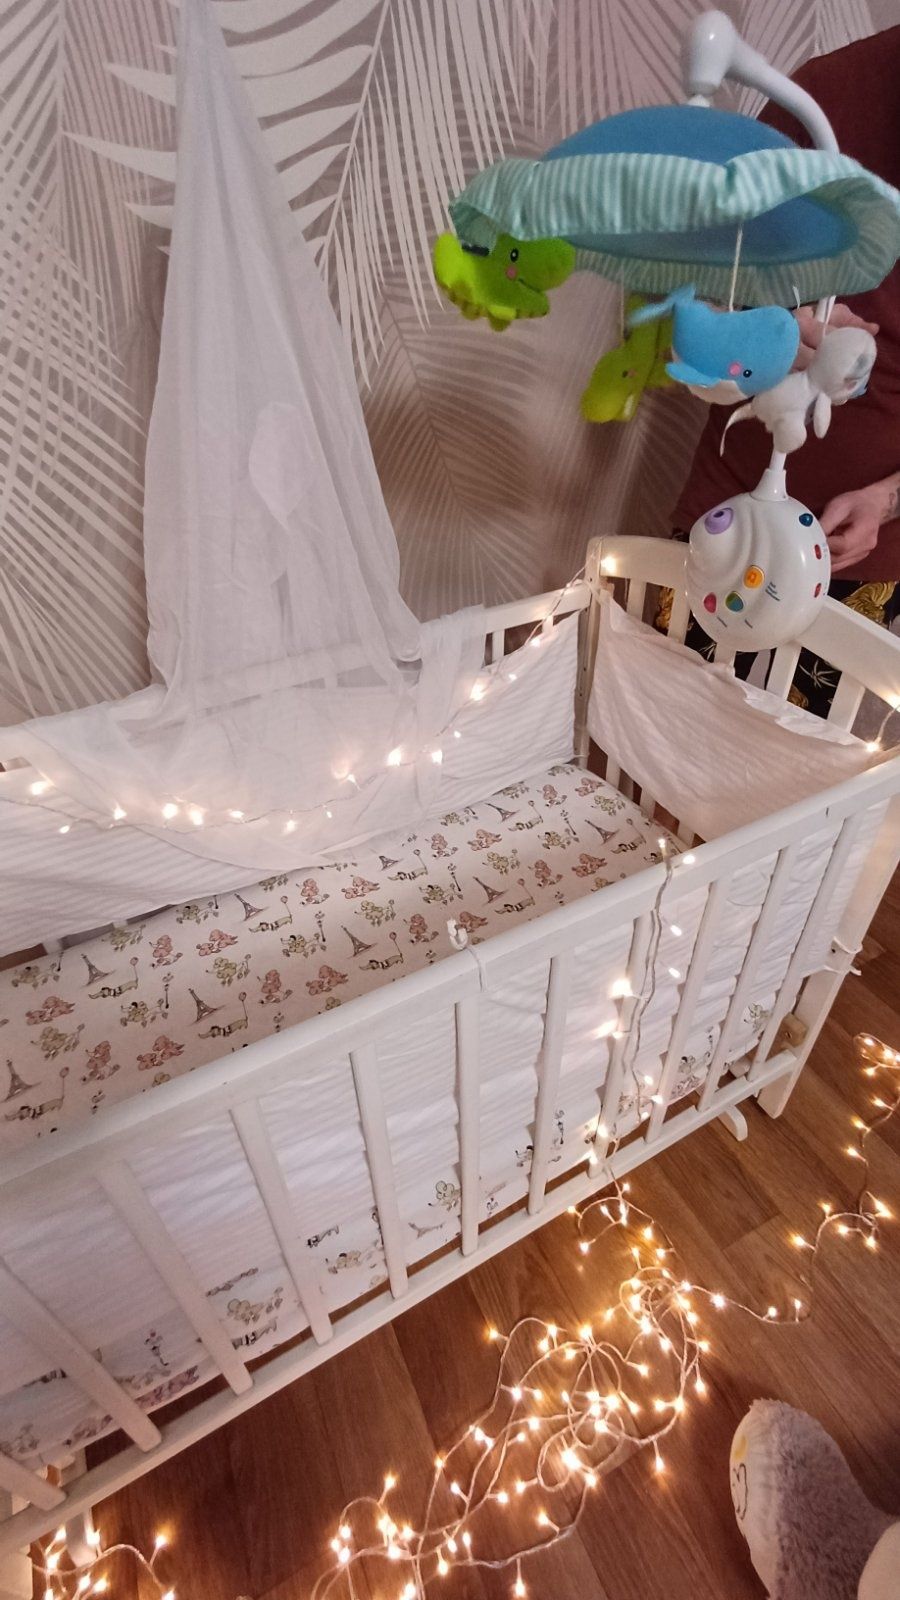 Детская кроватка с маятником